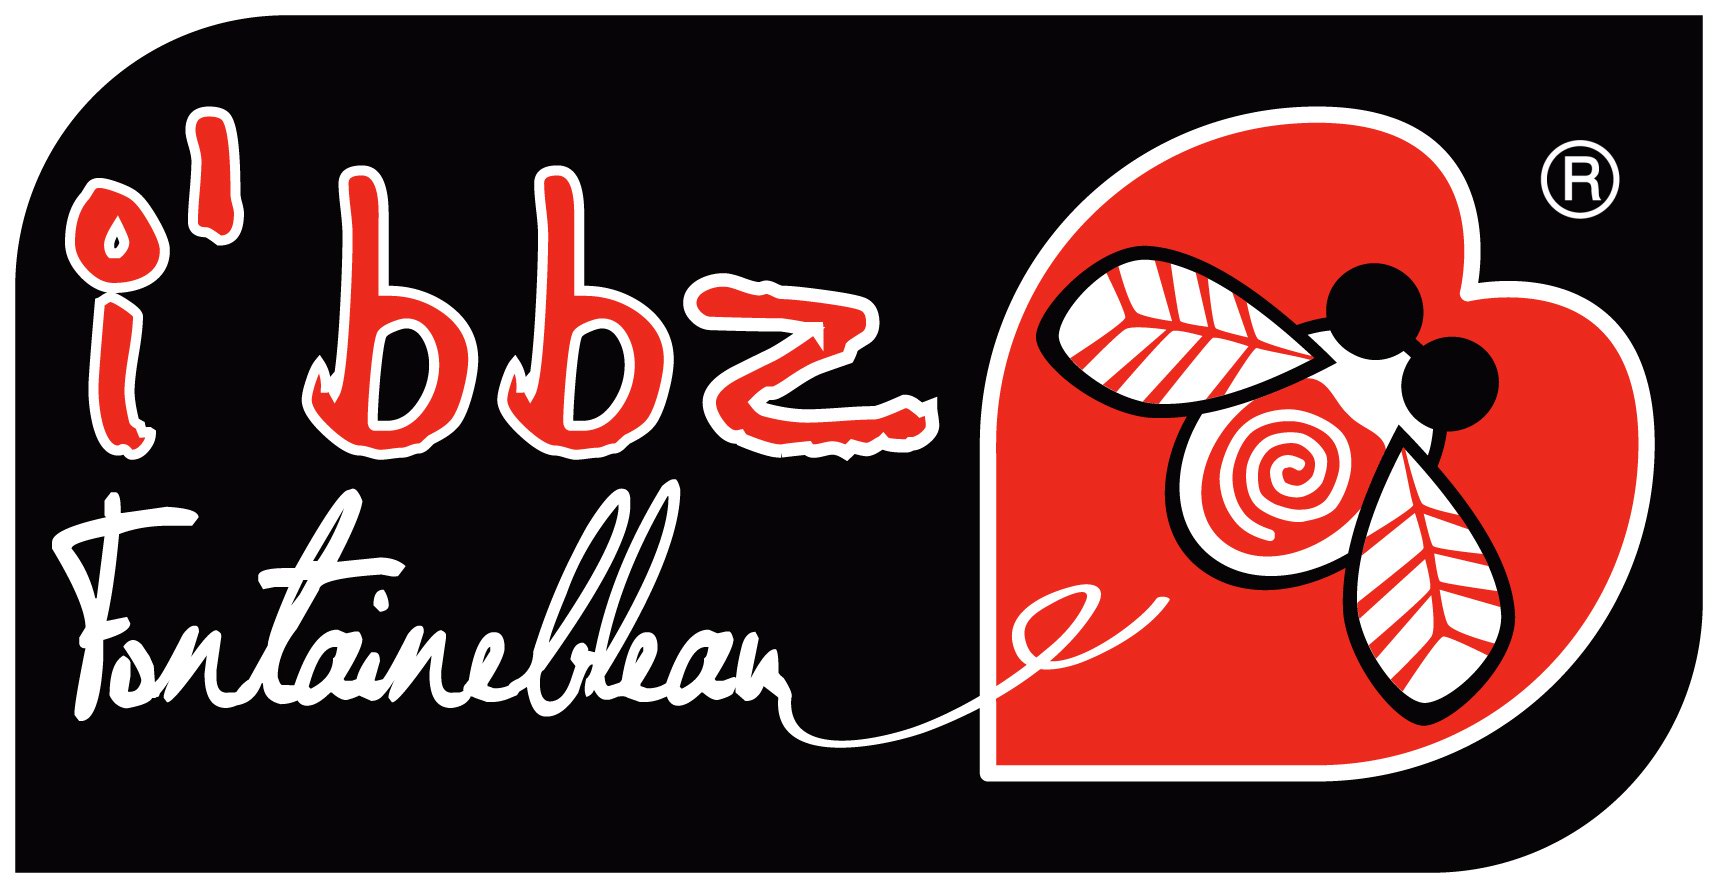 I'bzz logo